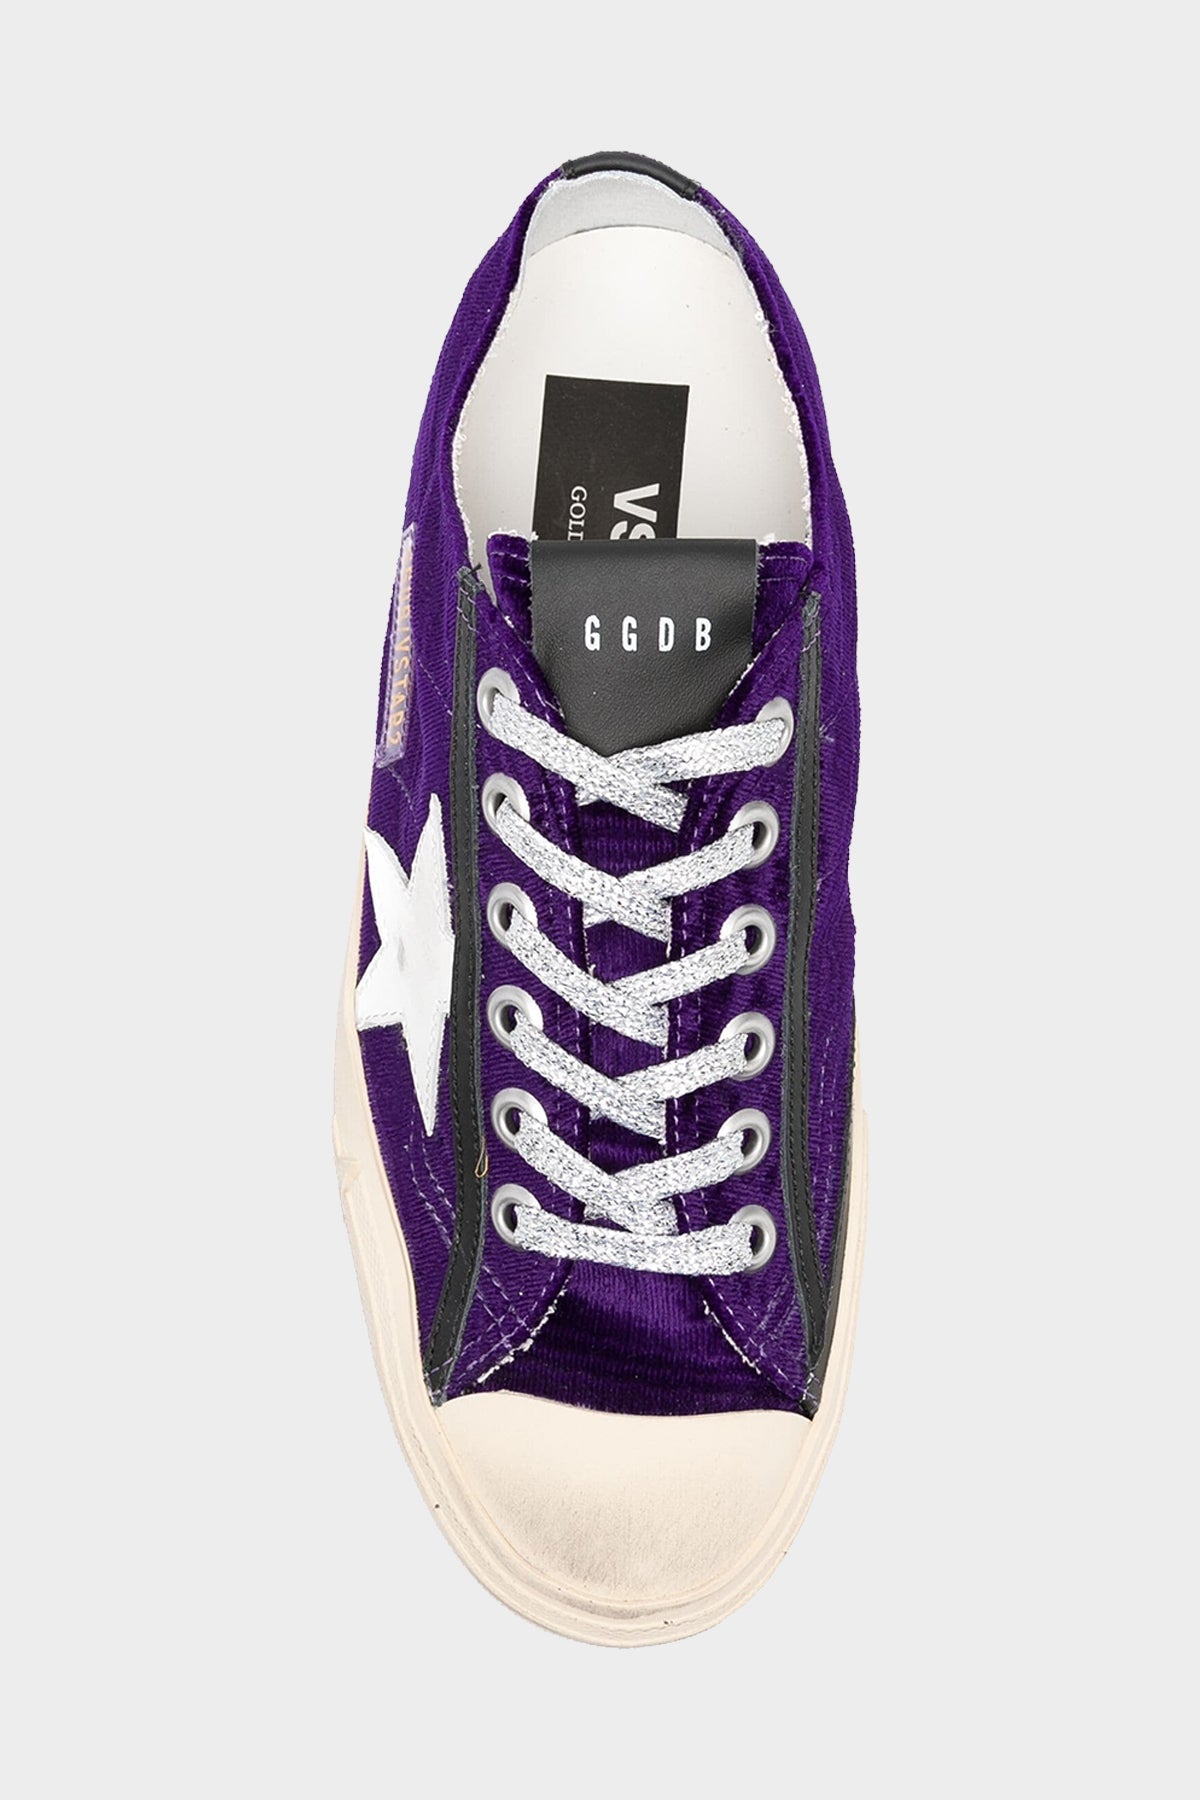 V-Star Purple Velvet Sneaker - shop-olivia.com